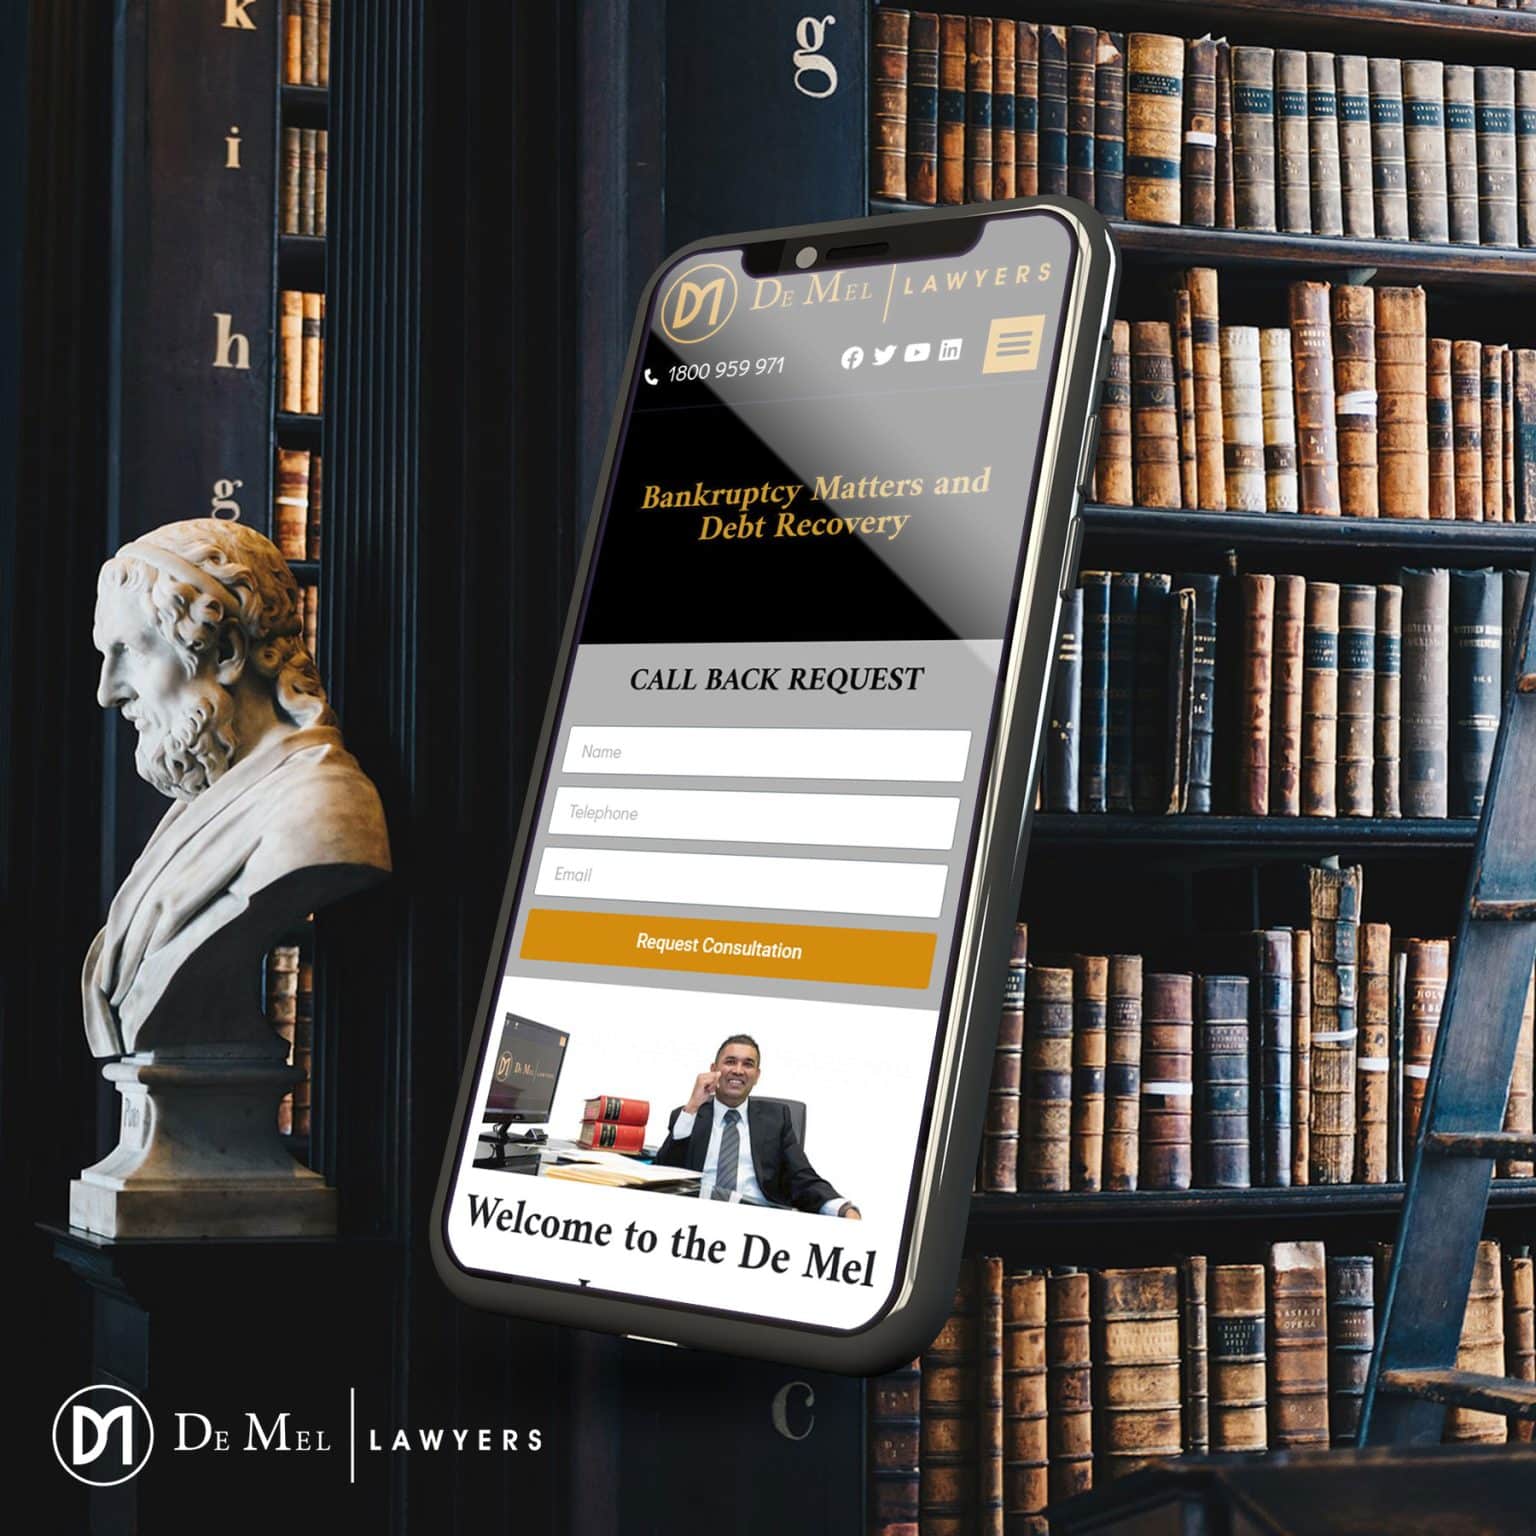 de_mel_lawyers mobile